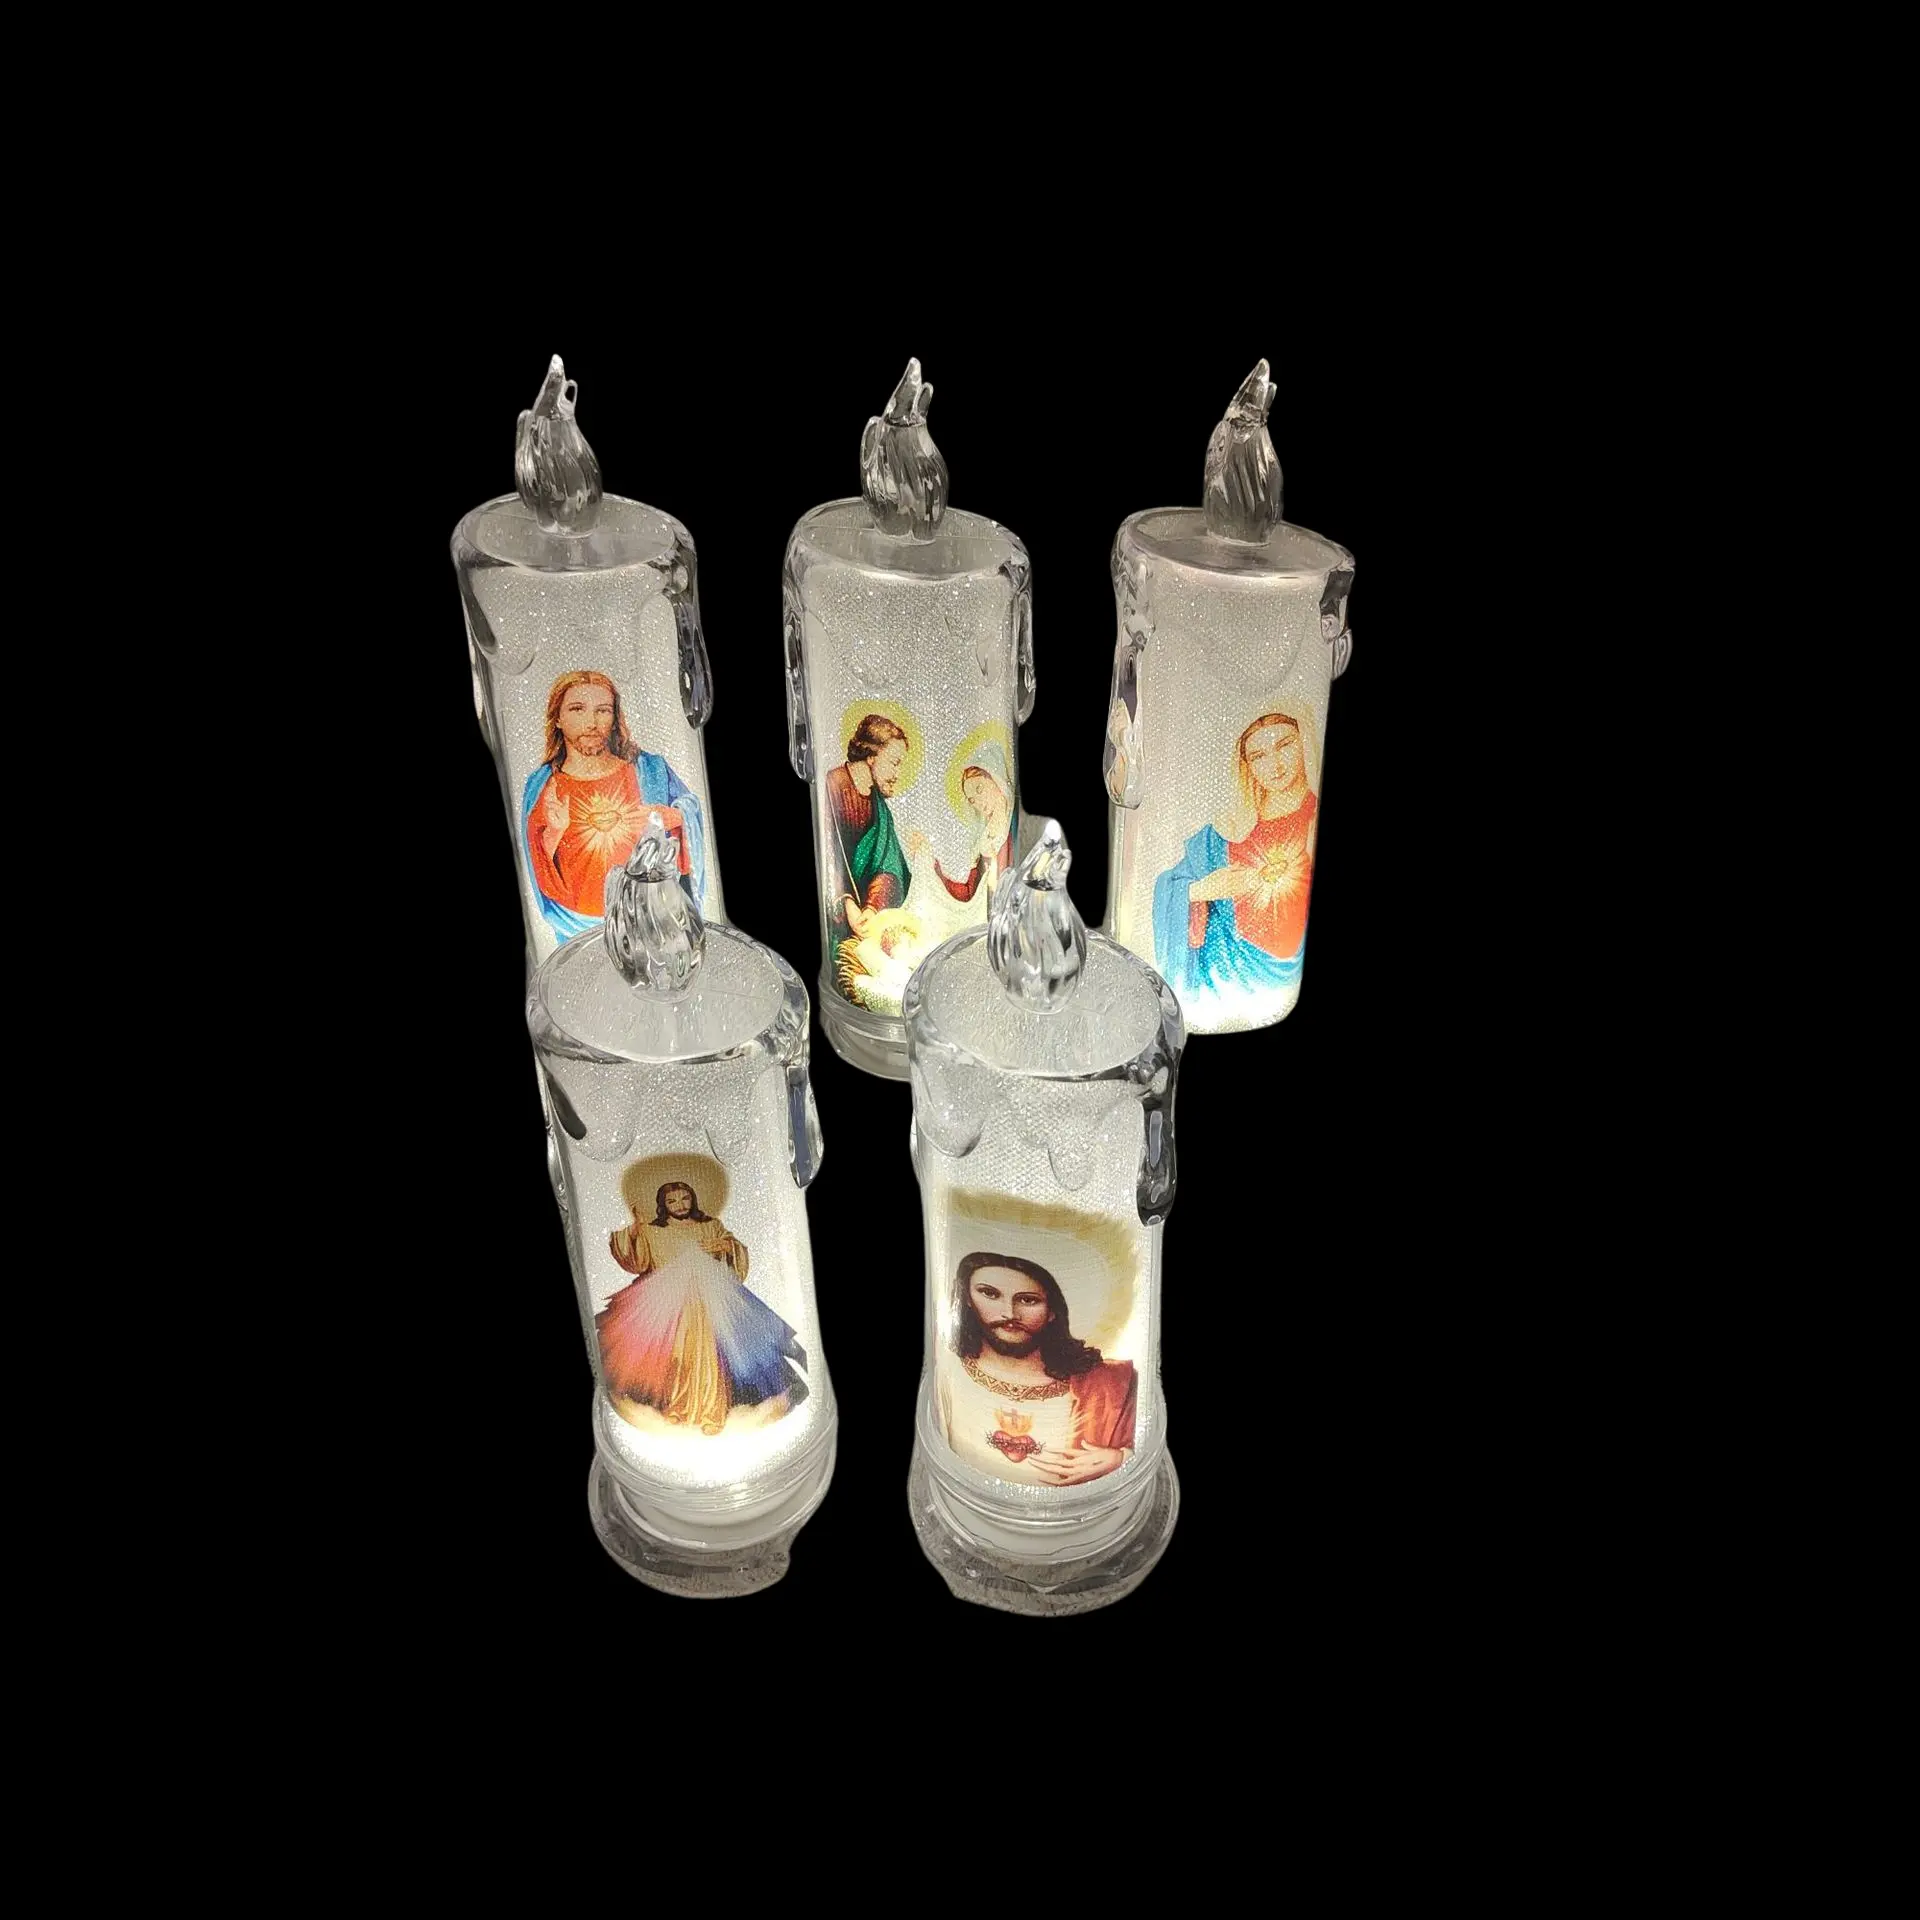 BESTSUN New design flameless led tea lights in bulk for decoration for religious activities